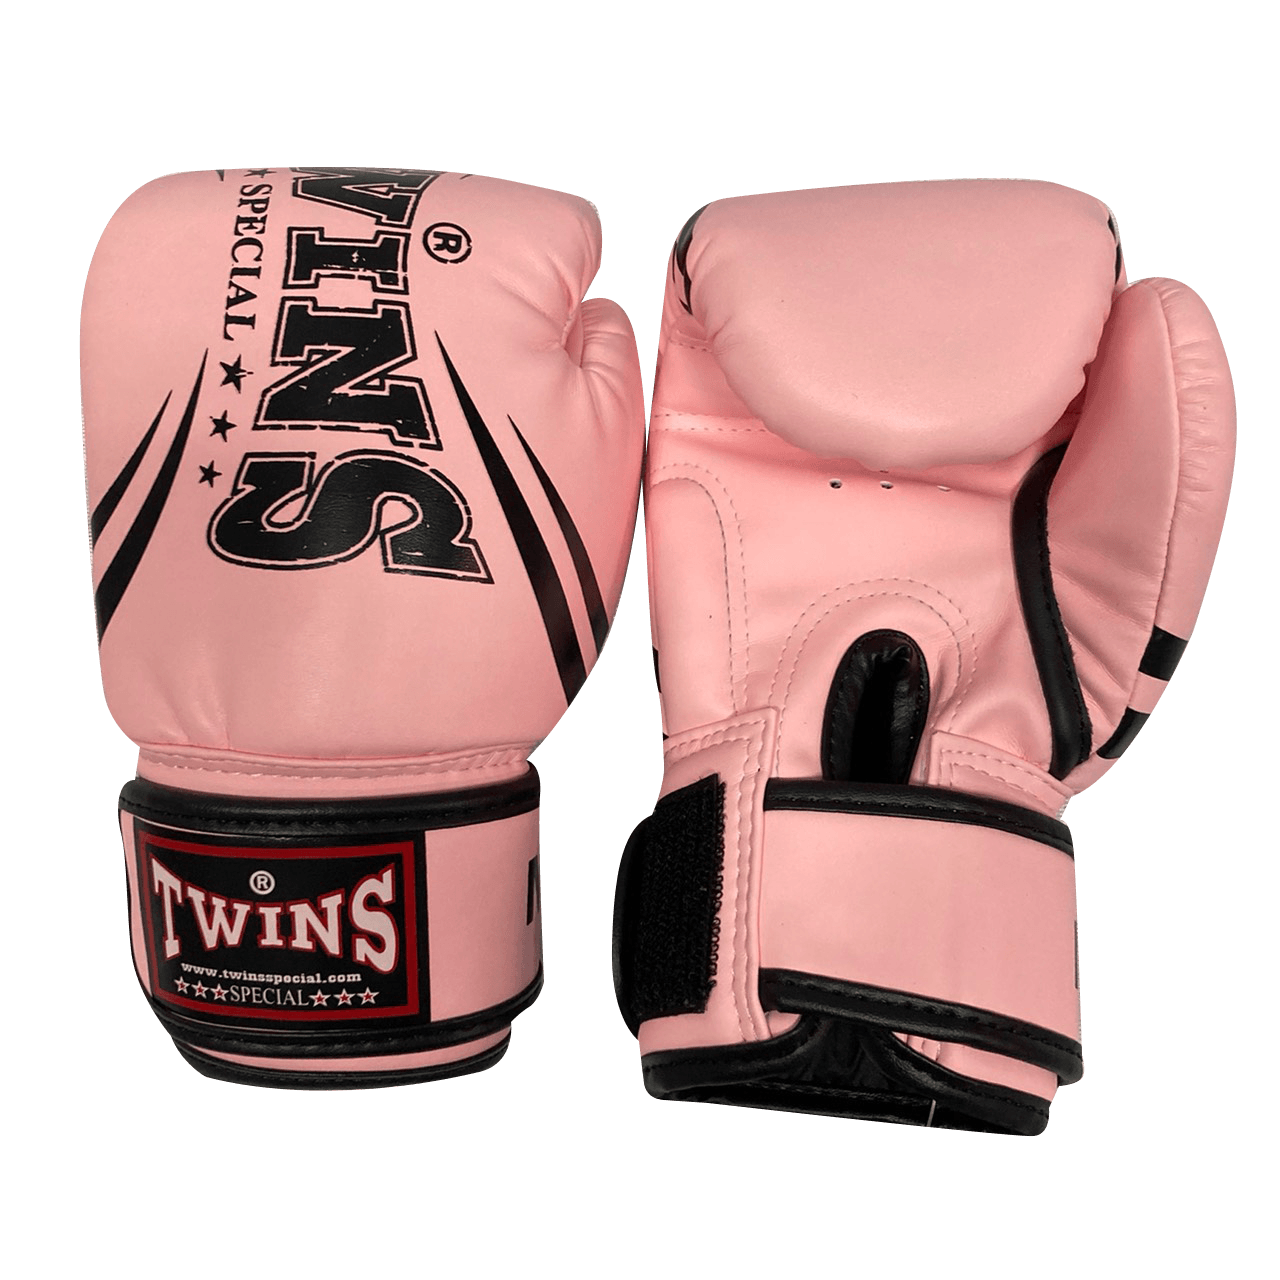 Twins Special Boxing Gloves KIDS FBGVSD3-TW6 Light Pink Black – Blegend